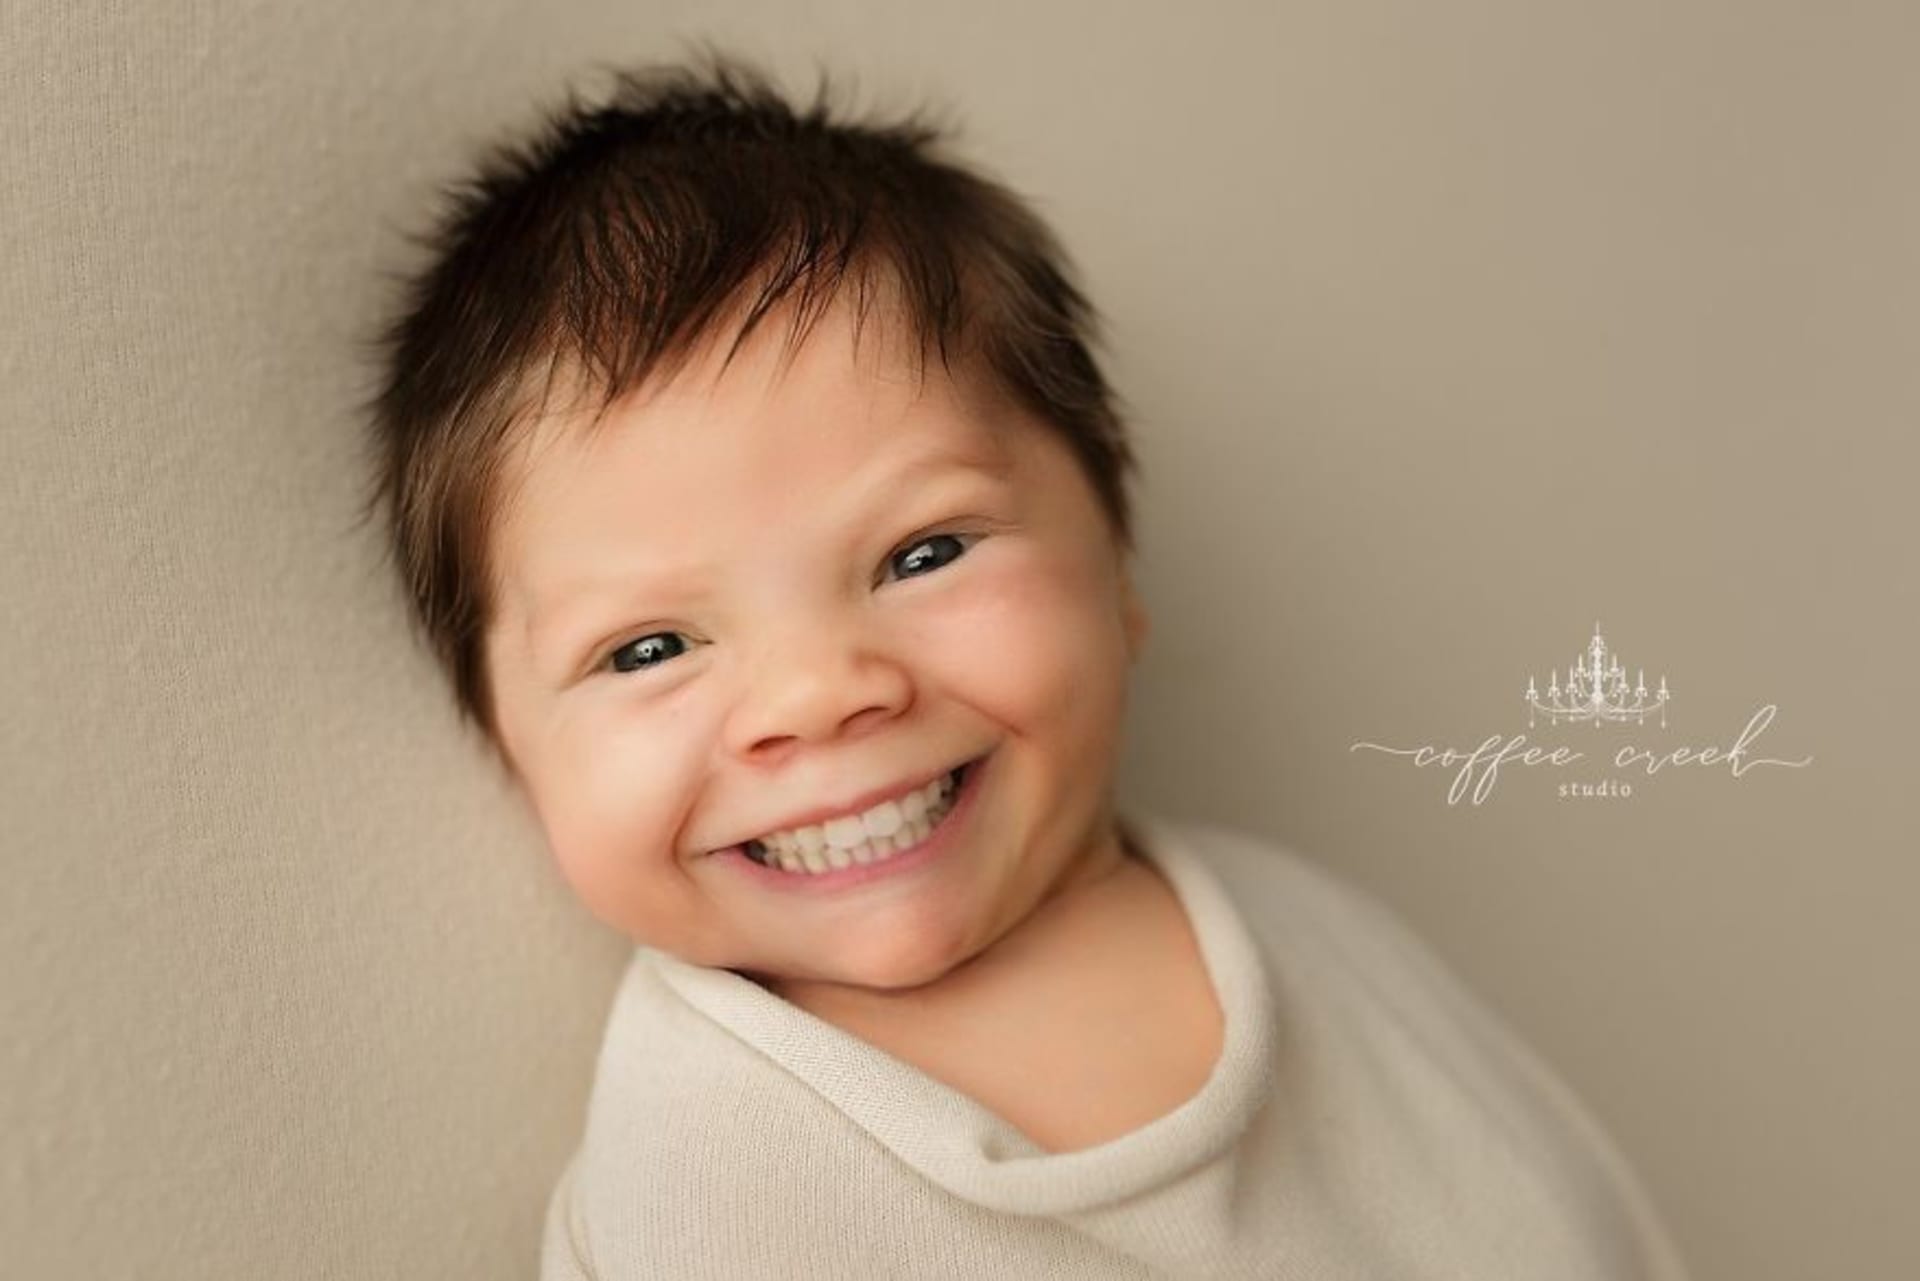 Fotky novorozenců se zuby děsí celý internet 3